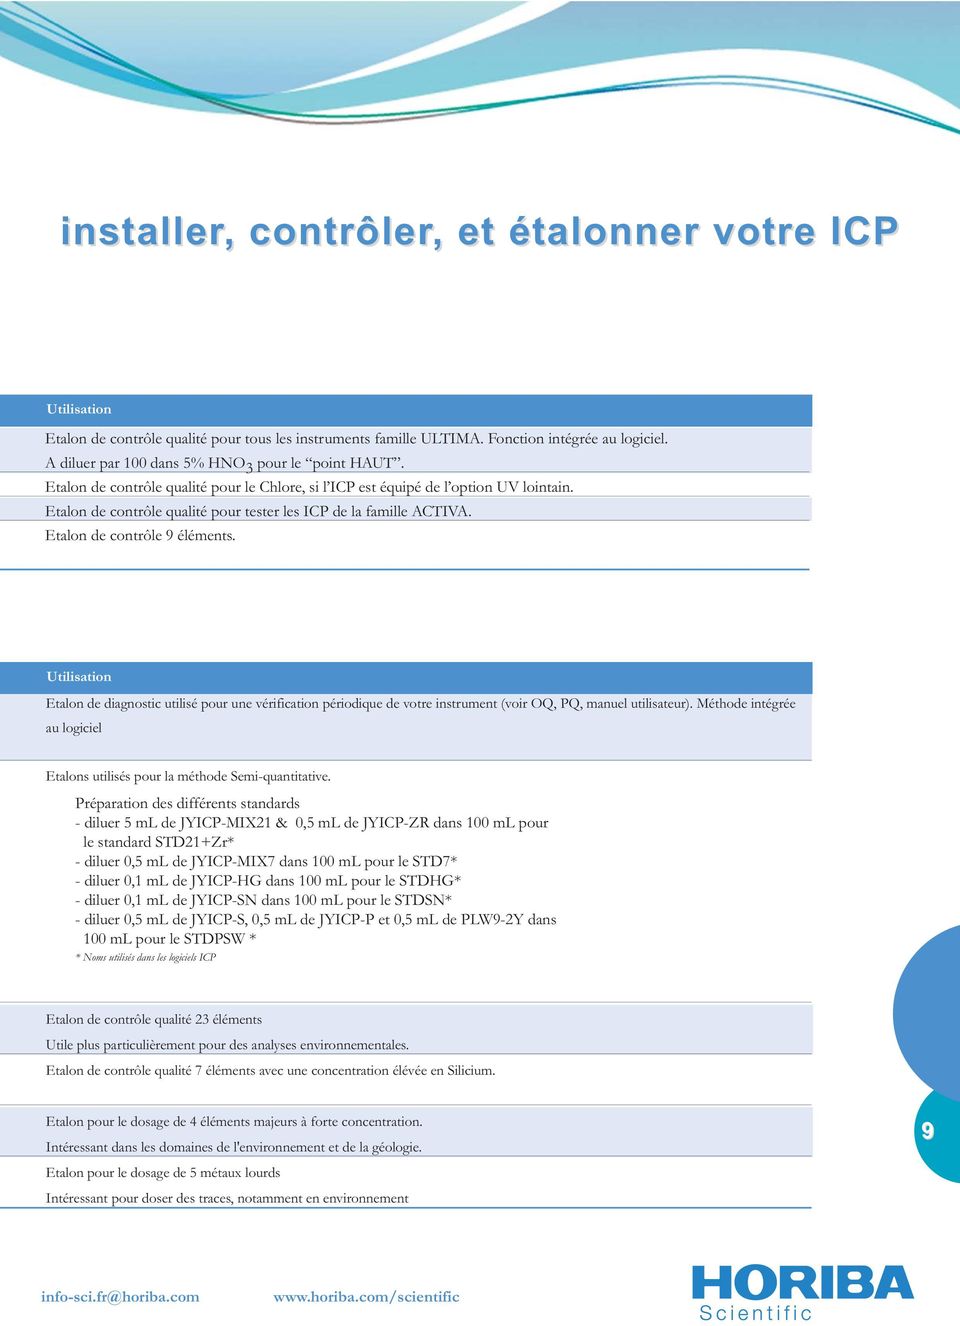 Etalon de contrôle qualité pour tester les ICP de la famille ACTIVA. Etalon de contrôle 9 éléments.